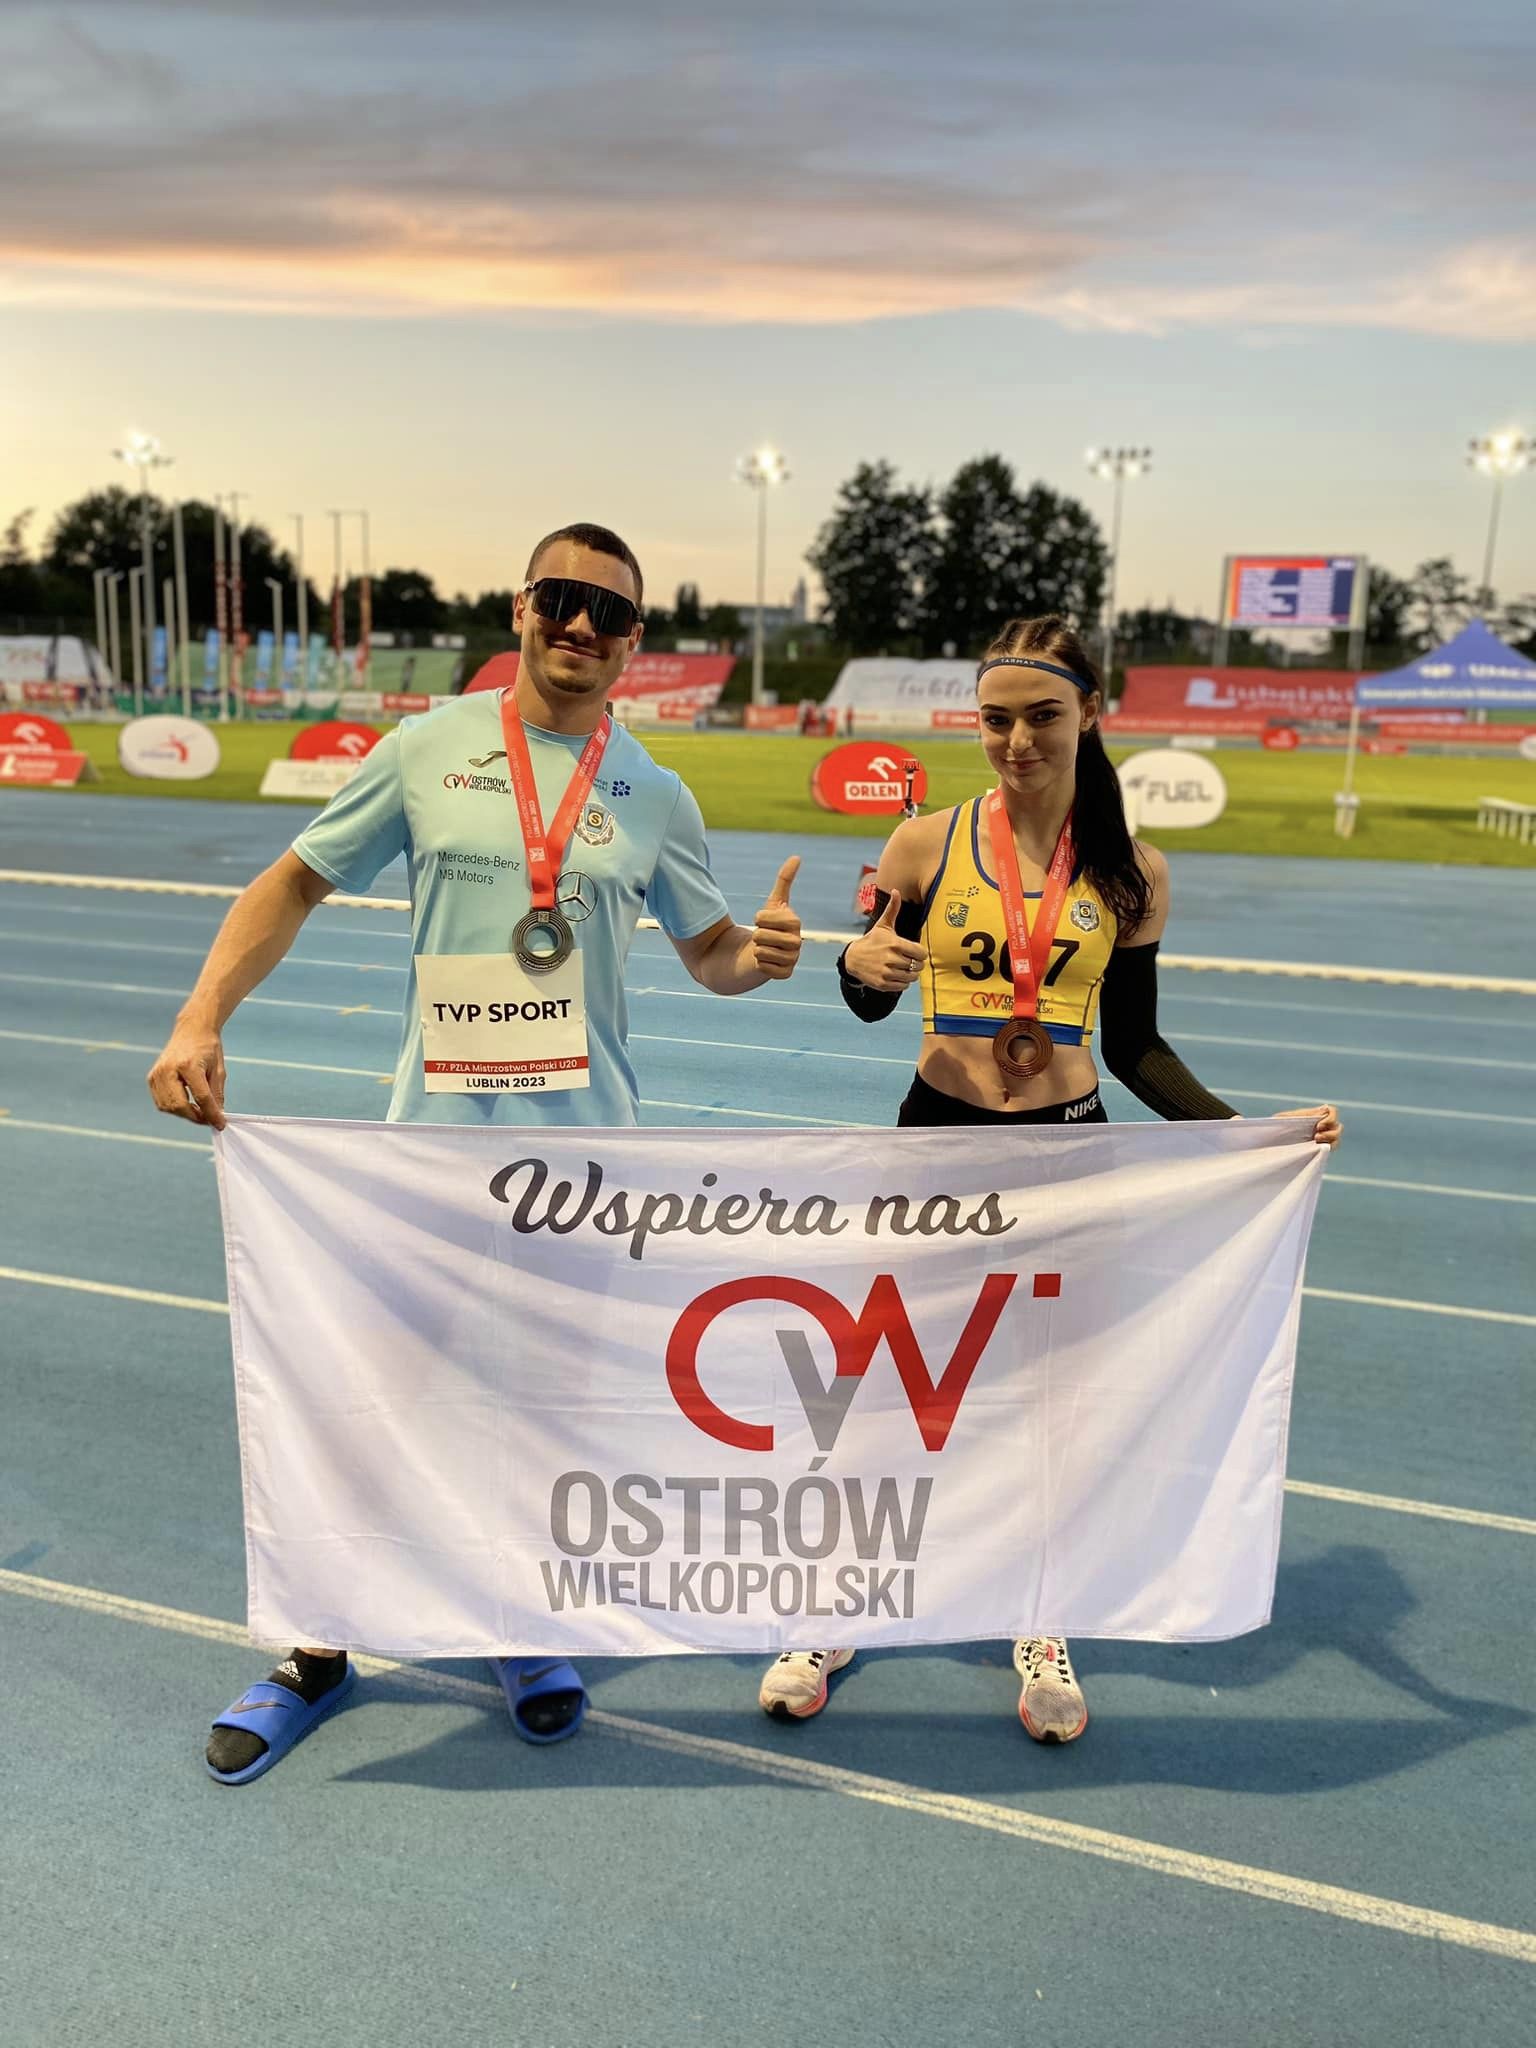 Dawid Grząka – SREBRO a Ewa Piaszczyńska – BRĄZ w biegach na 100 m w Mistrzostwach Polski U20